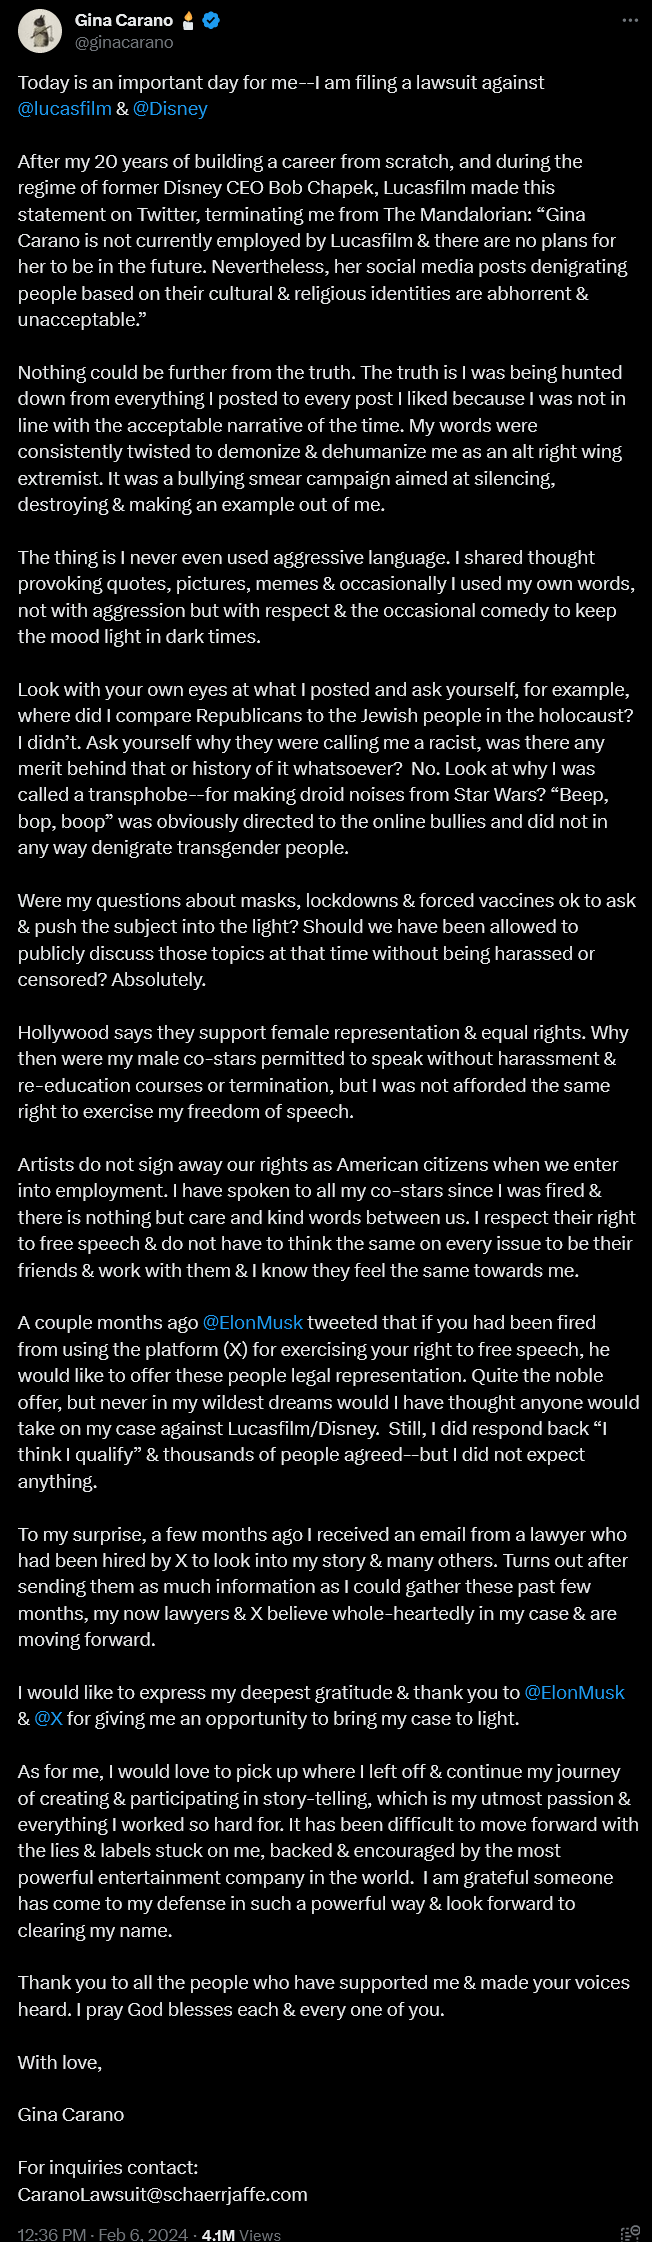 Gina Carano anuncia ação legal contra Lucasfilm e Disney